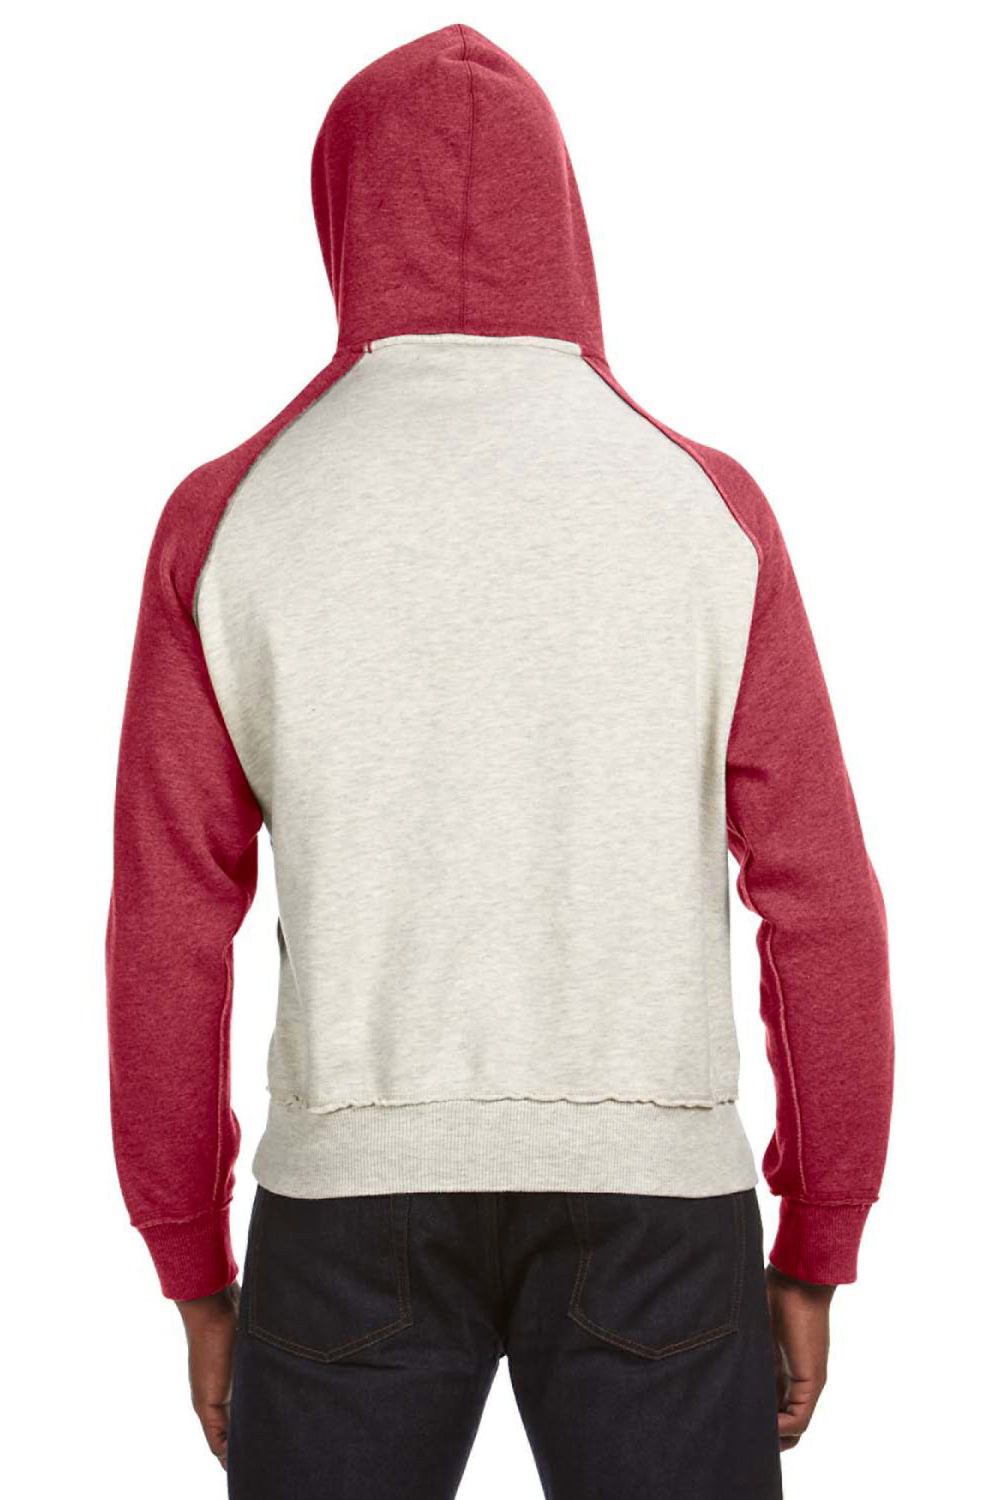 J America JA8885 Mens Vintage Heather Hooded Sweatshirt Hoodie Oatmeal/Red Back